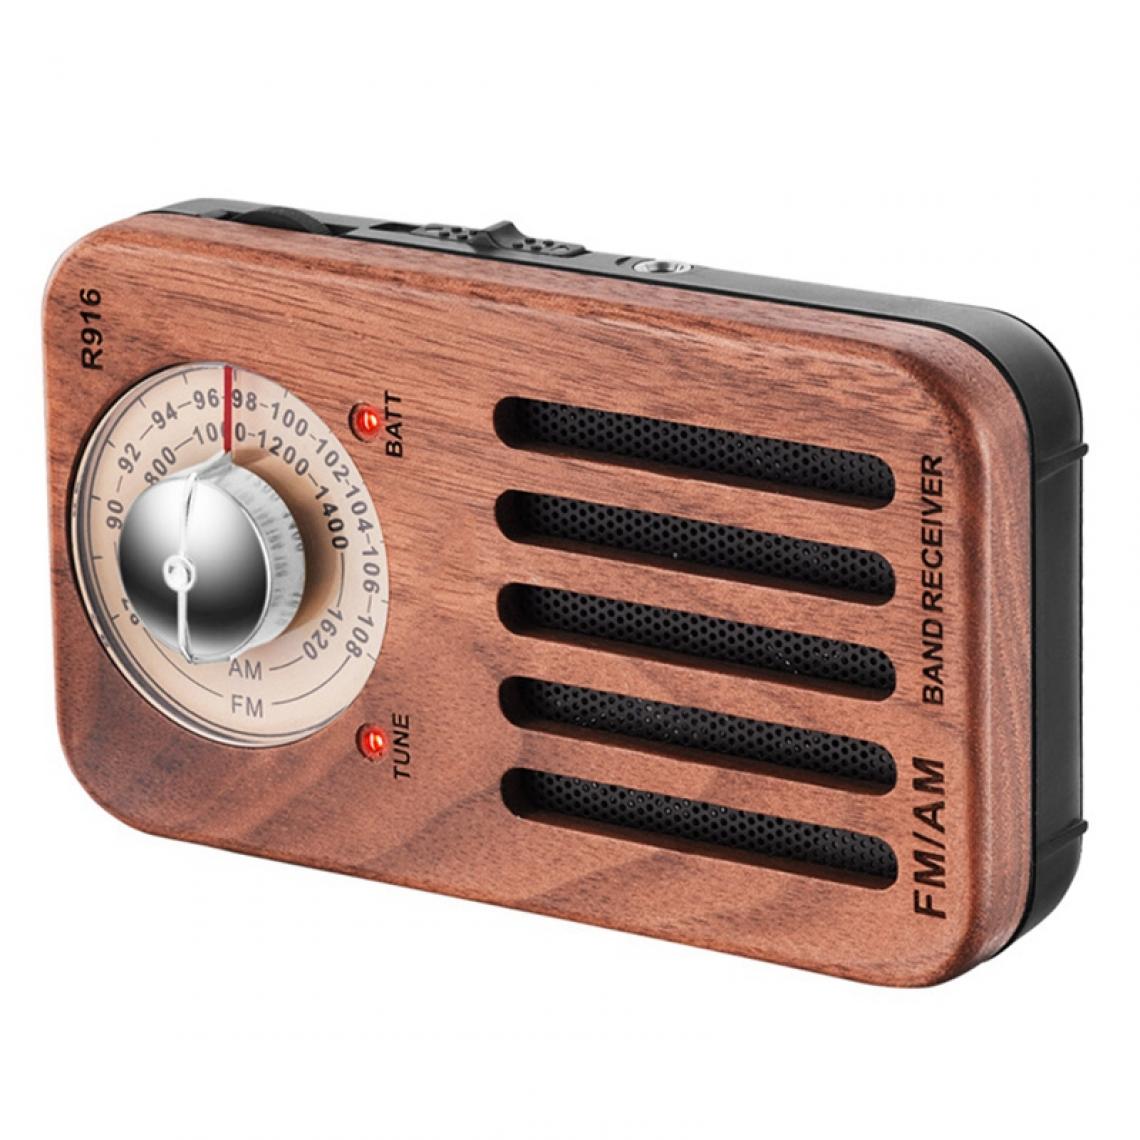 Universal - Radio portable AM/FM, radio de poche en bois de cerisier rétro avec réception optimale, casque Jack, 2 piles AA |(brun) - Radio